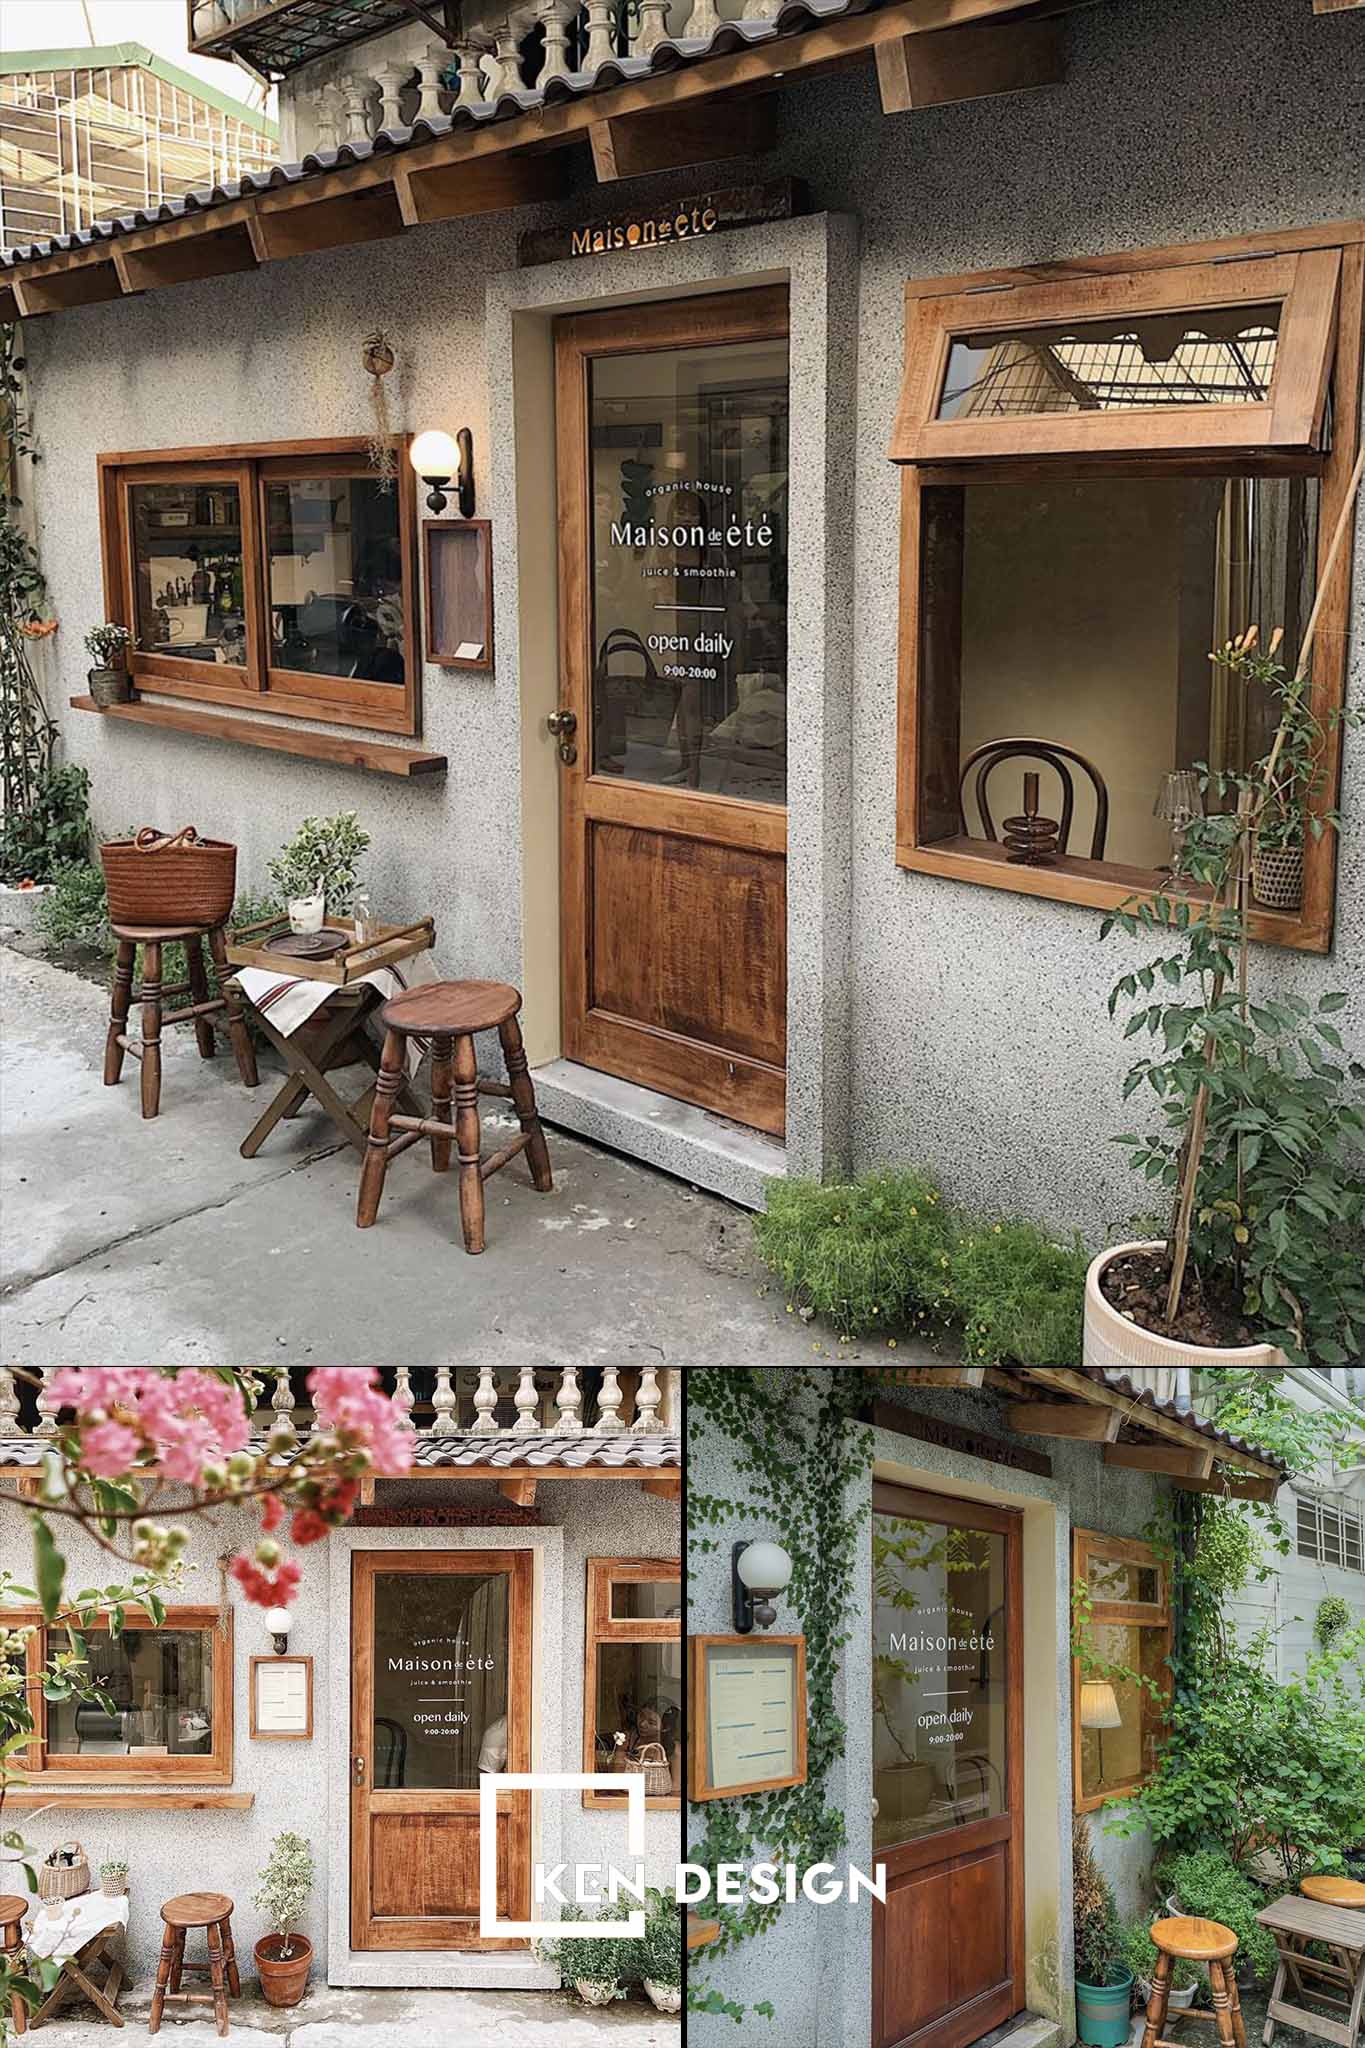 thiết kế quán cafe đẹp Maison de ete tinh tế và hiện đại